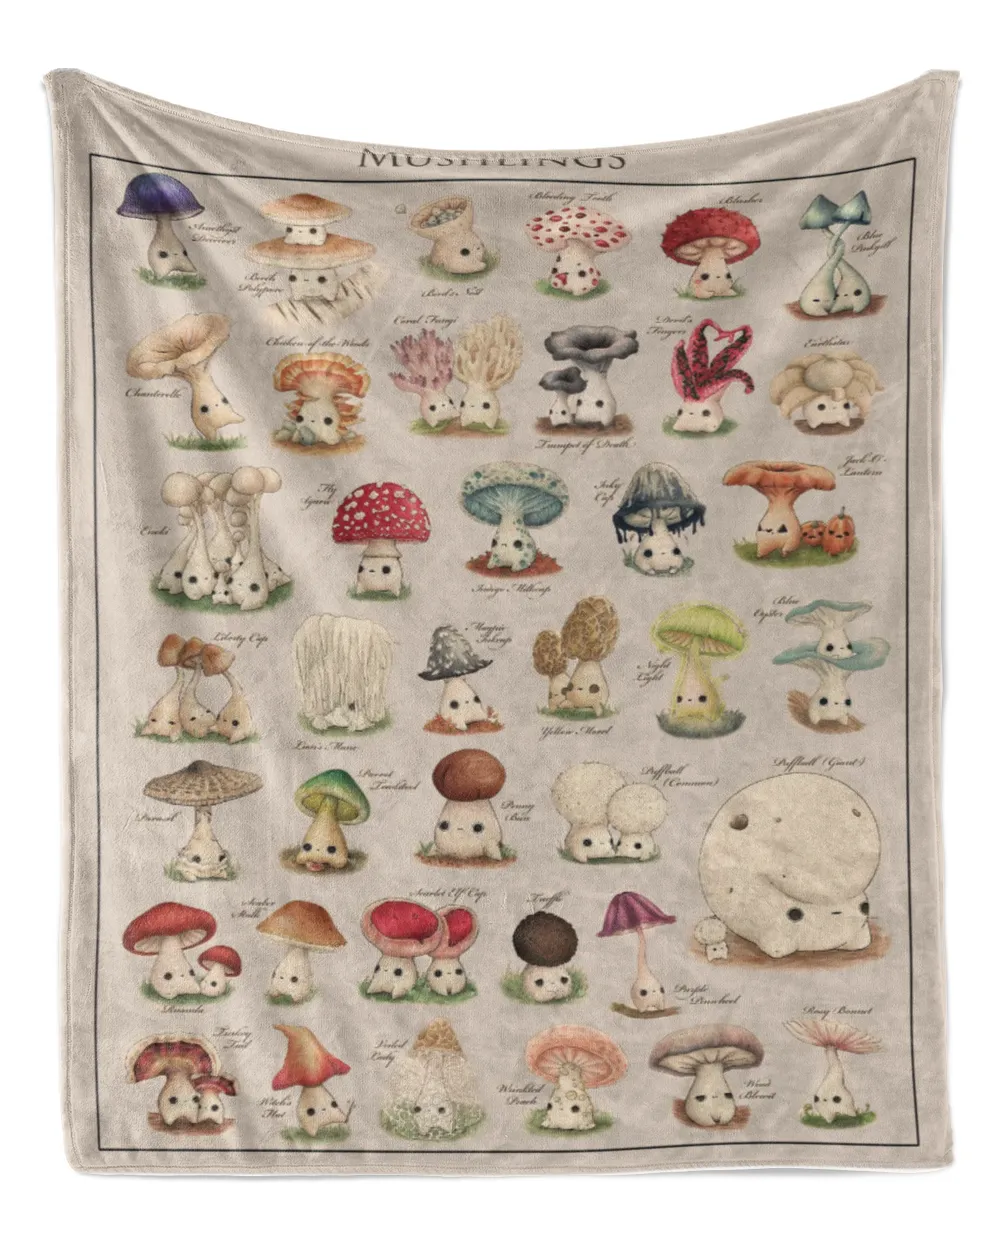 Mushling Woven Queen Blanket, Mushroom Fungi Tapestry Blanket